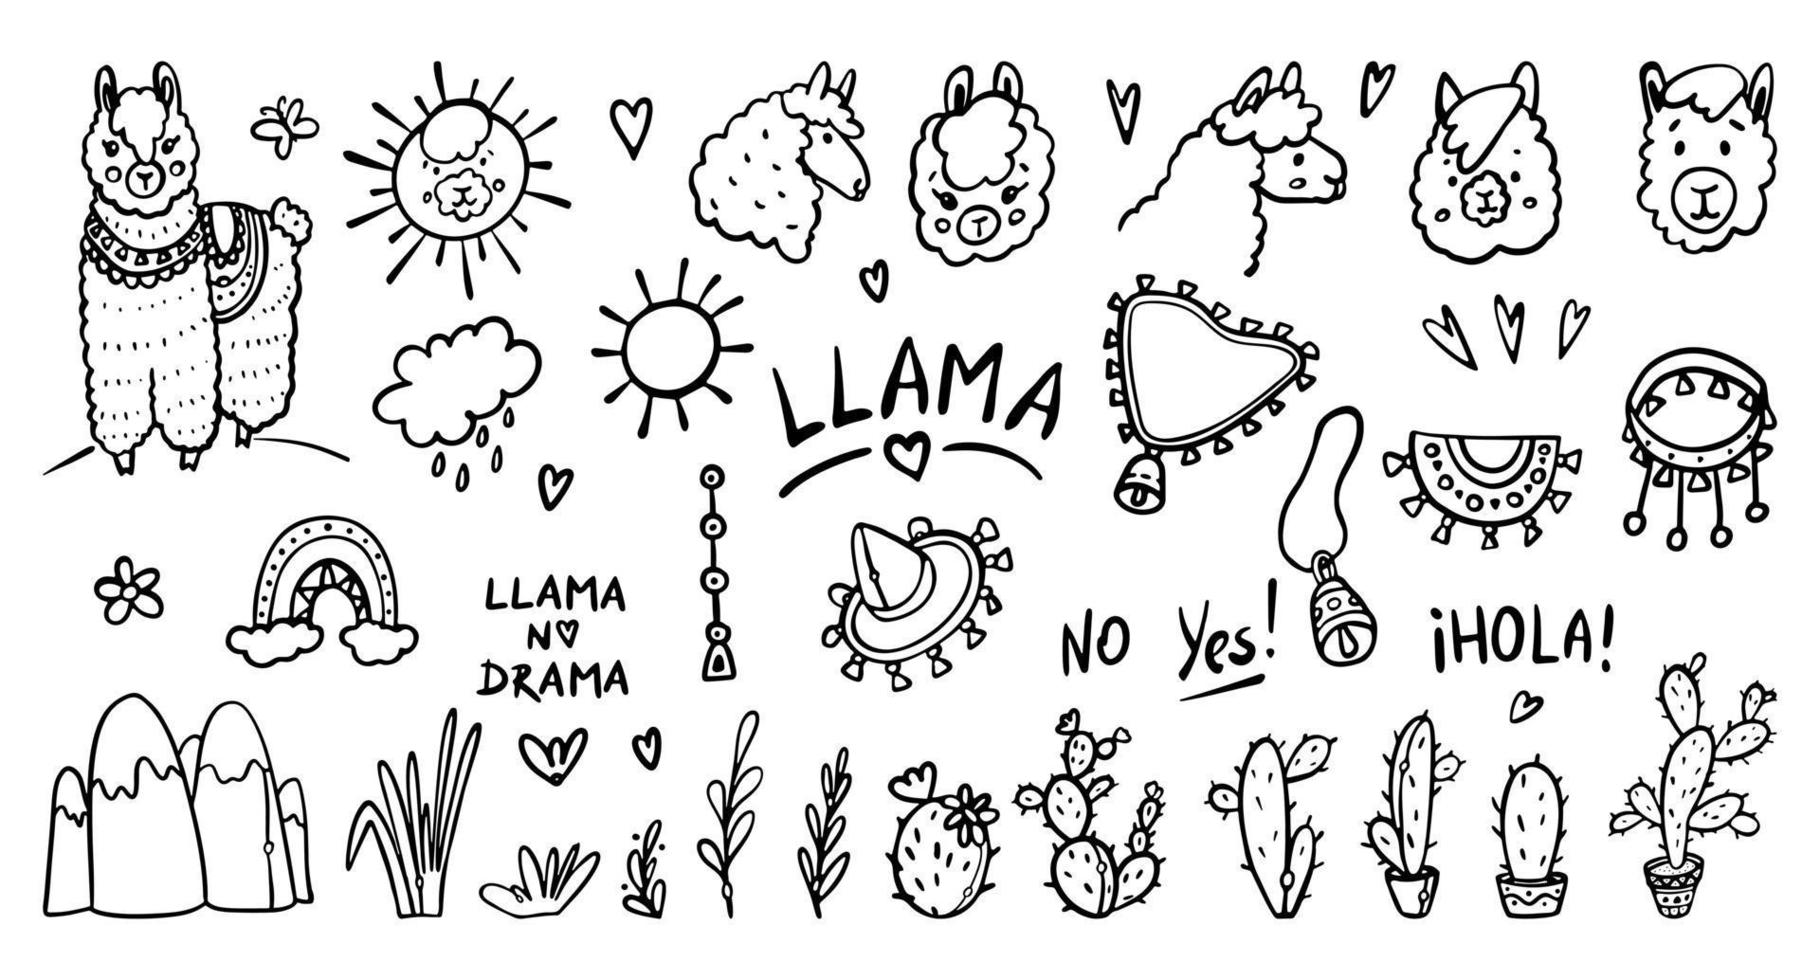 Lama handgetekende schets doodles cartoon vector illustratie set. schattige alpaca, dierenportretten, cactussen, bladeren, sieraden